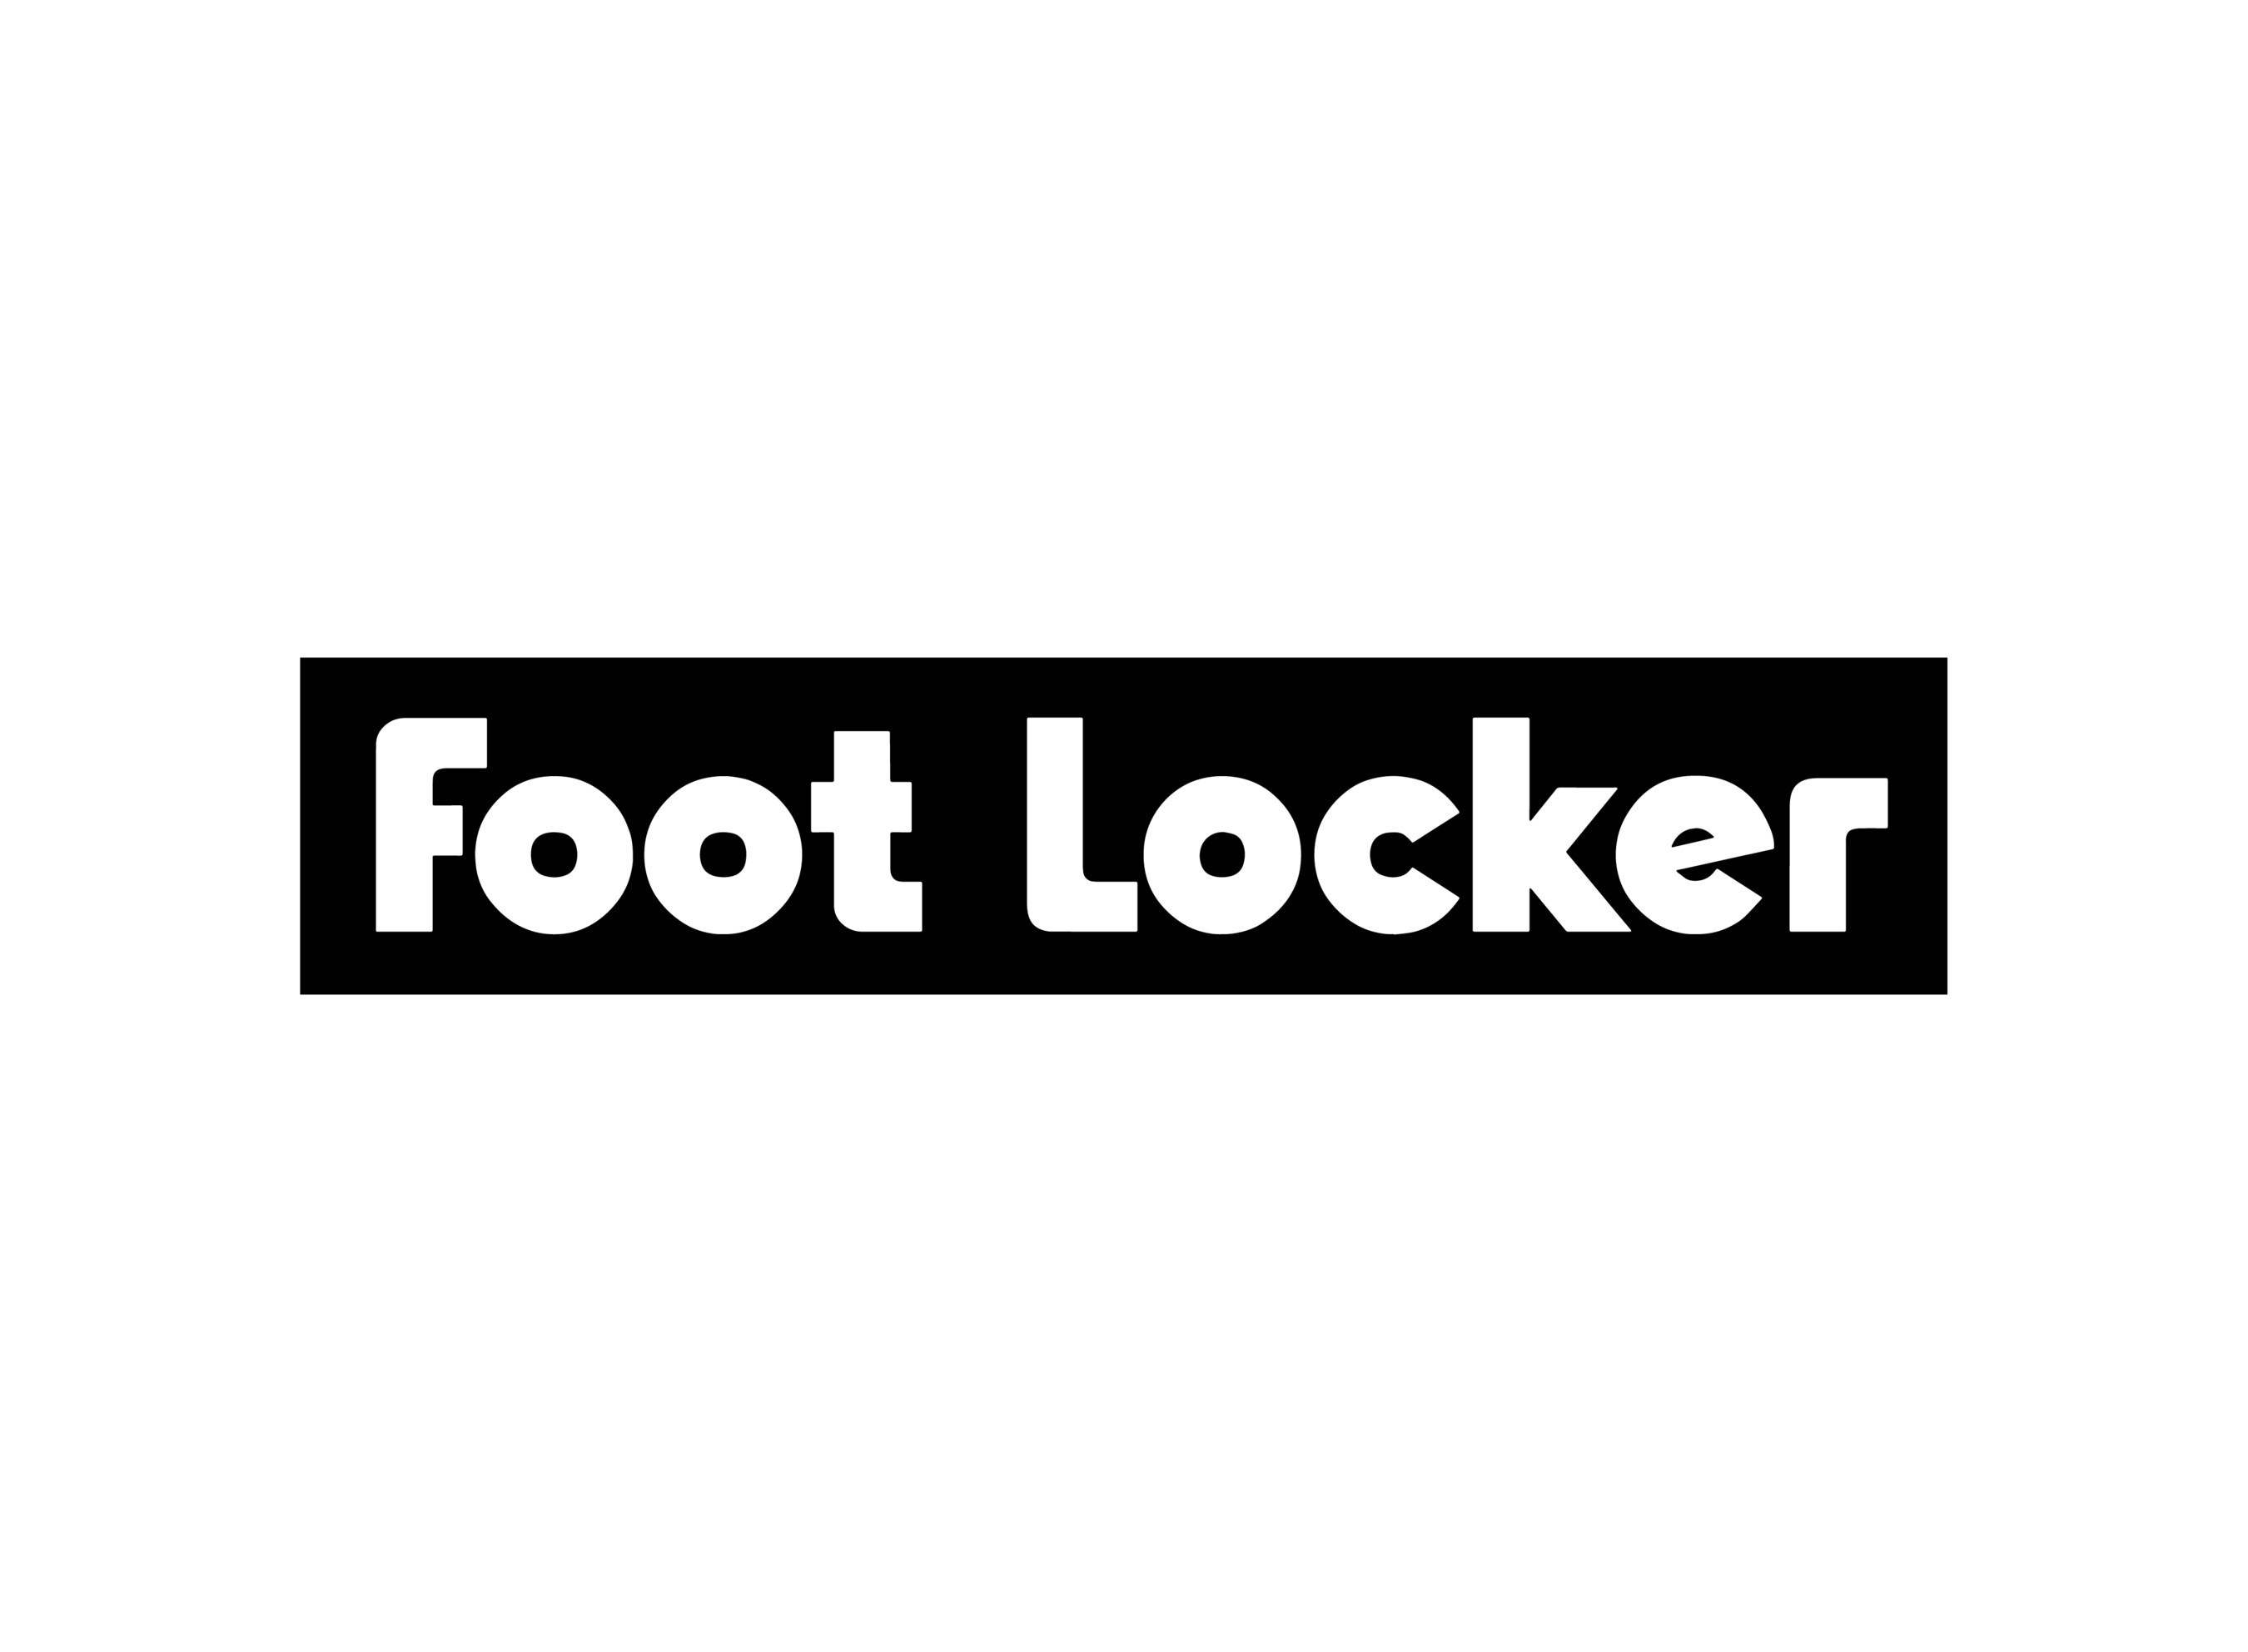 foot locker in store reebok